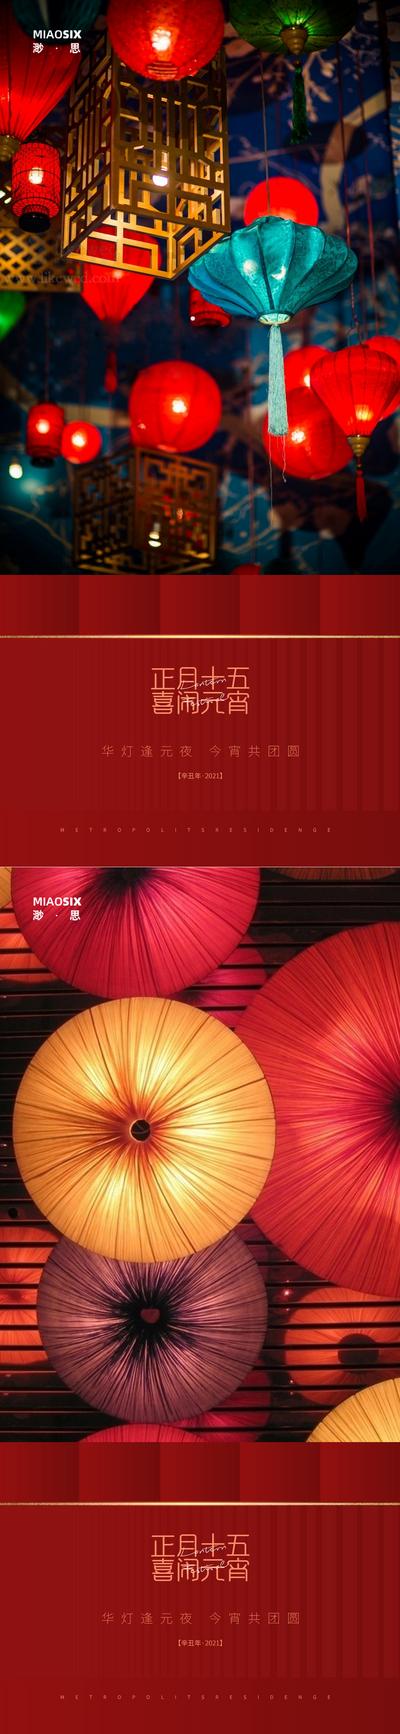 南门网 海报 房地产 中国传统节日 元宵节 灯笼